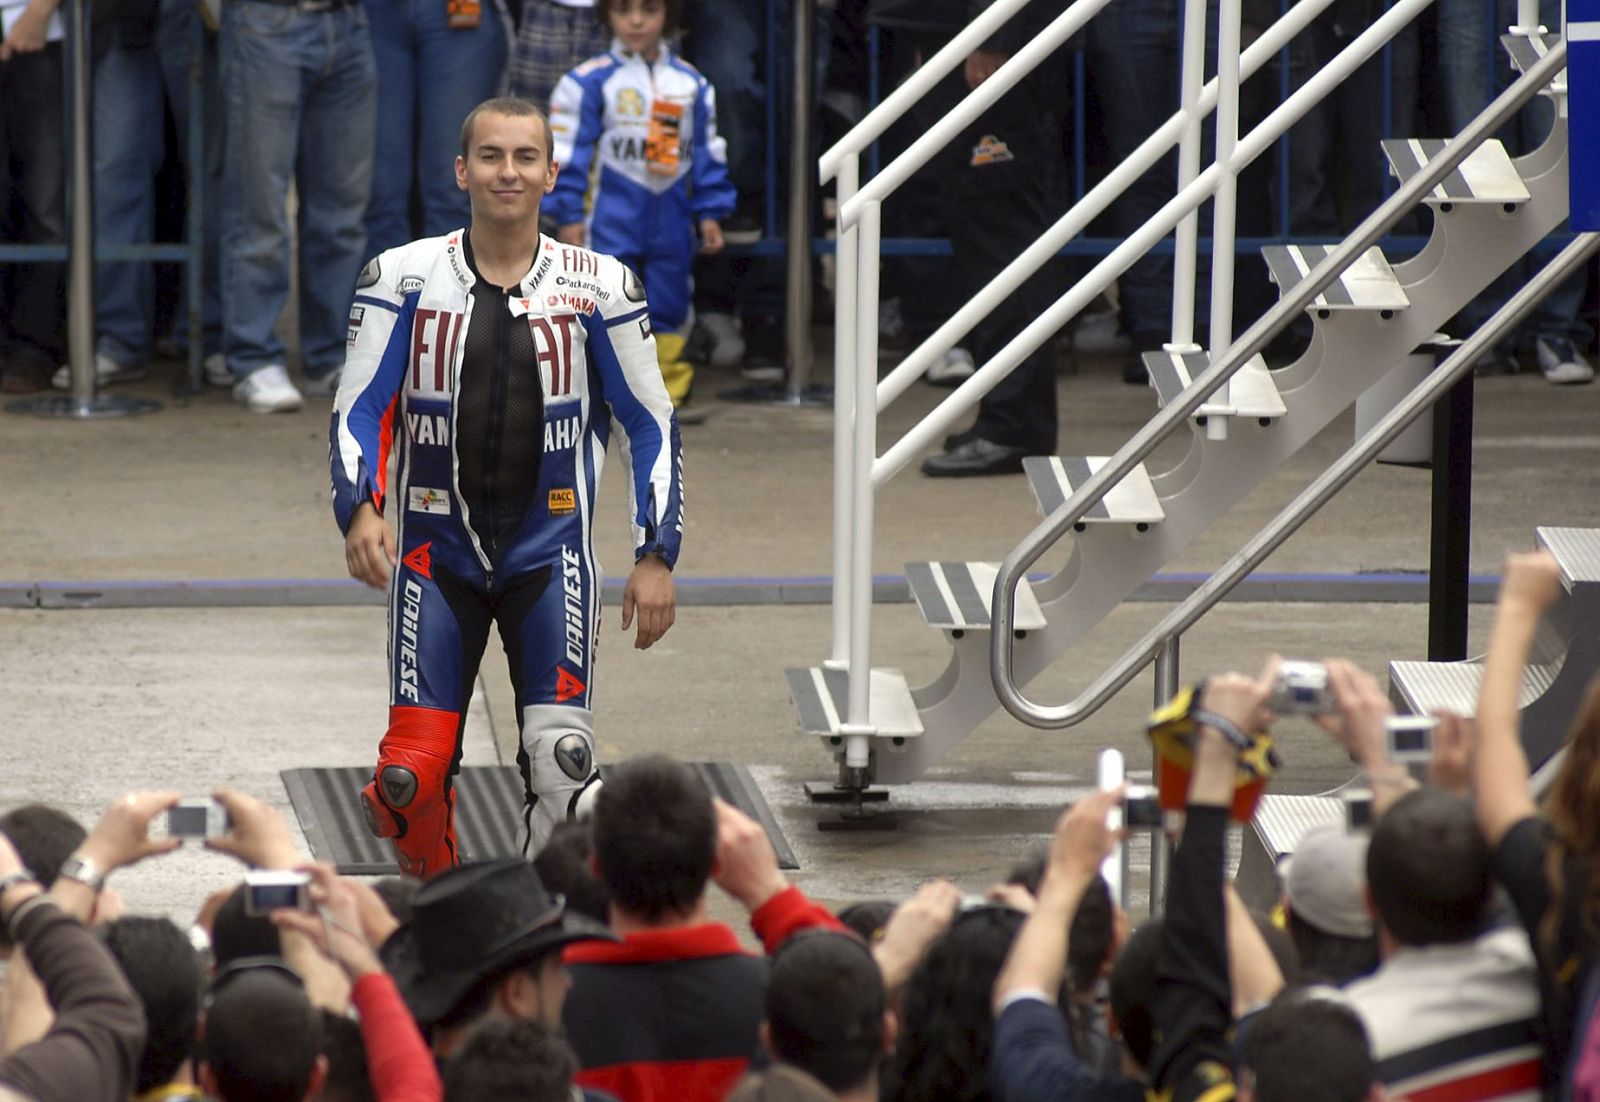 El piloto español de Moto GP Jorge Lorenzo afronta con optimismo el arranque del Mundial.